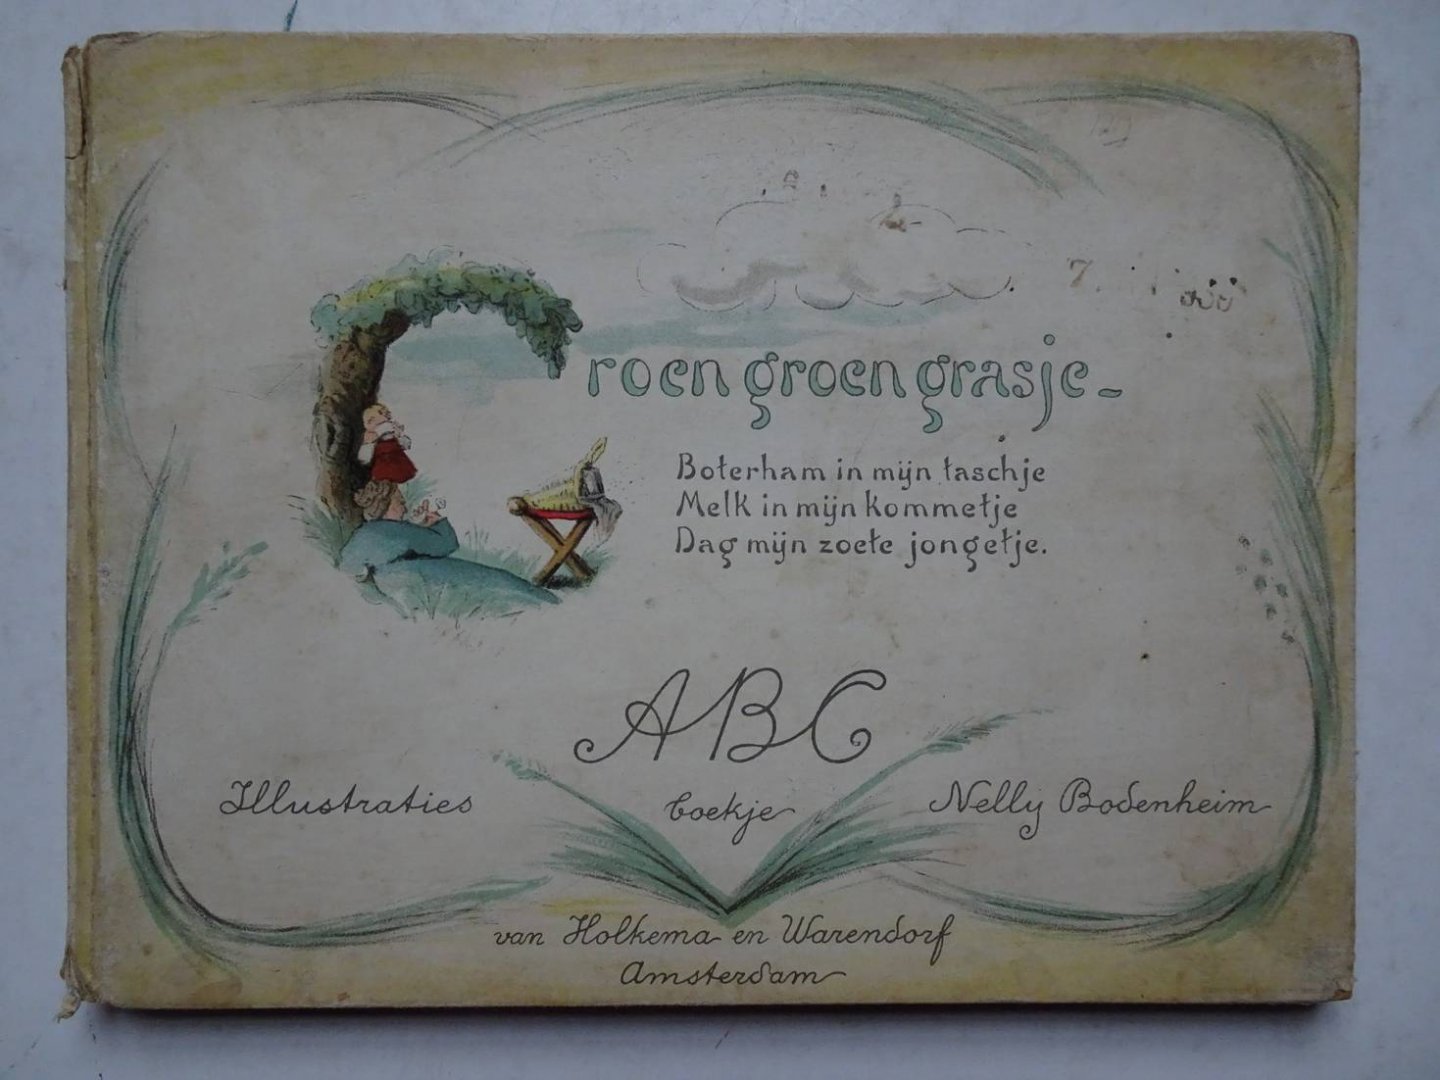 Bodenheim, Nelly. - Groen groen grasje. A.B.C.- boekje.